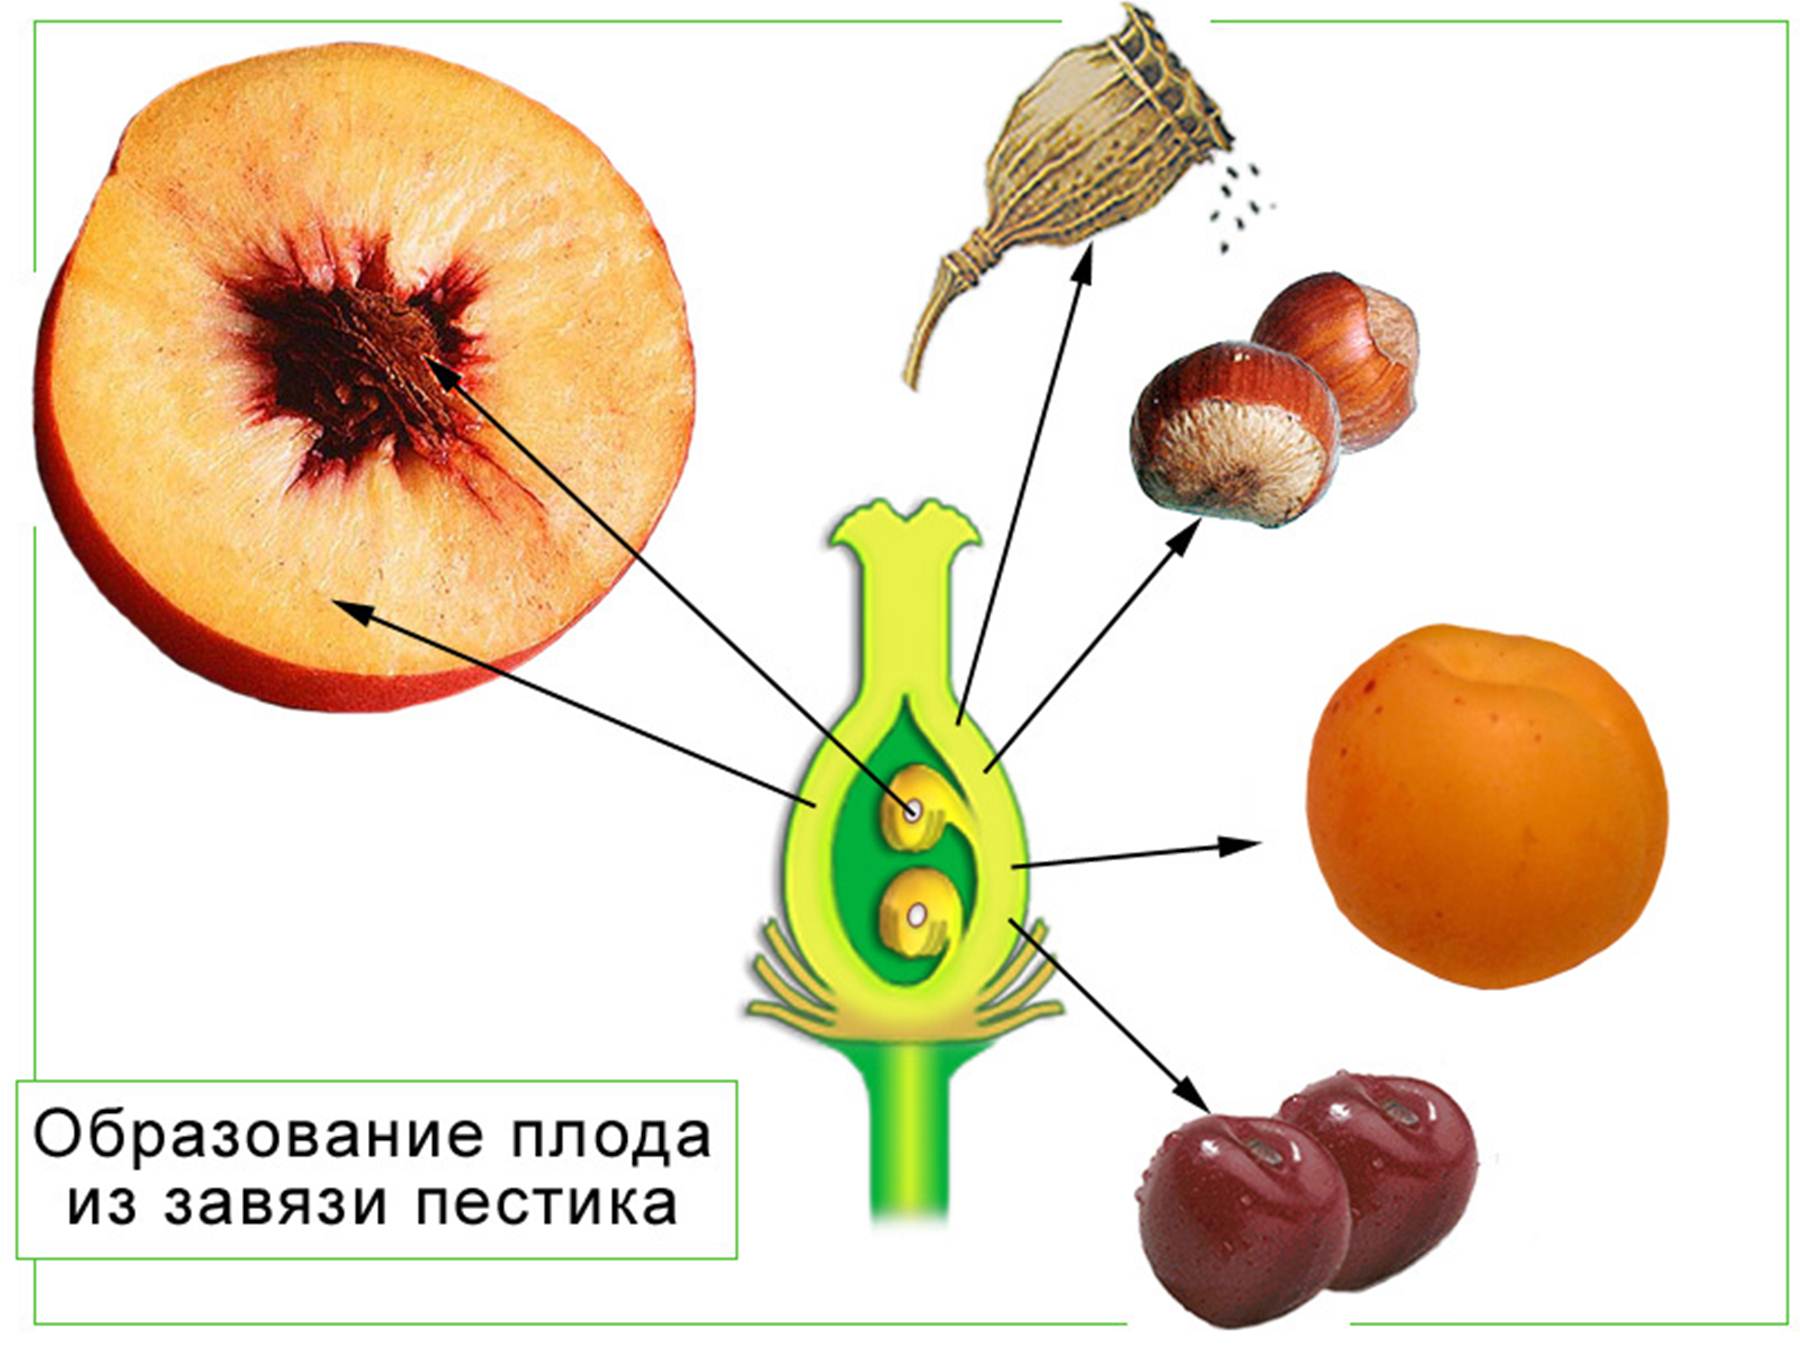 Плоды могут образоваться у растений отдела